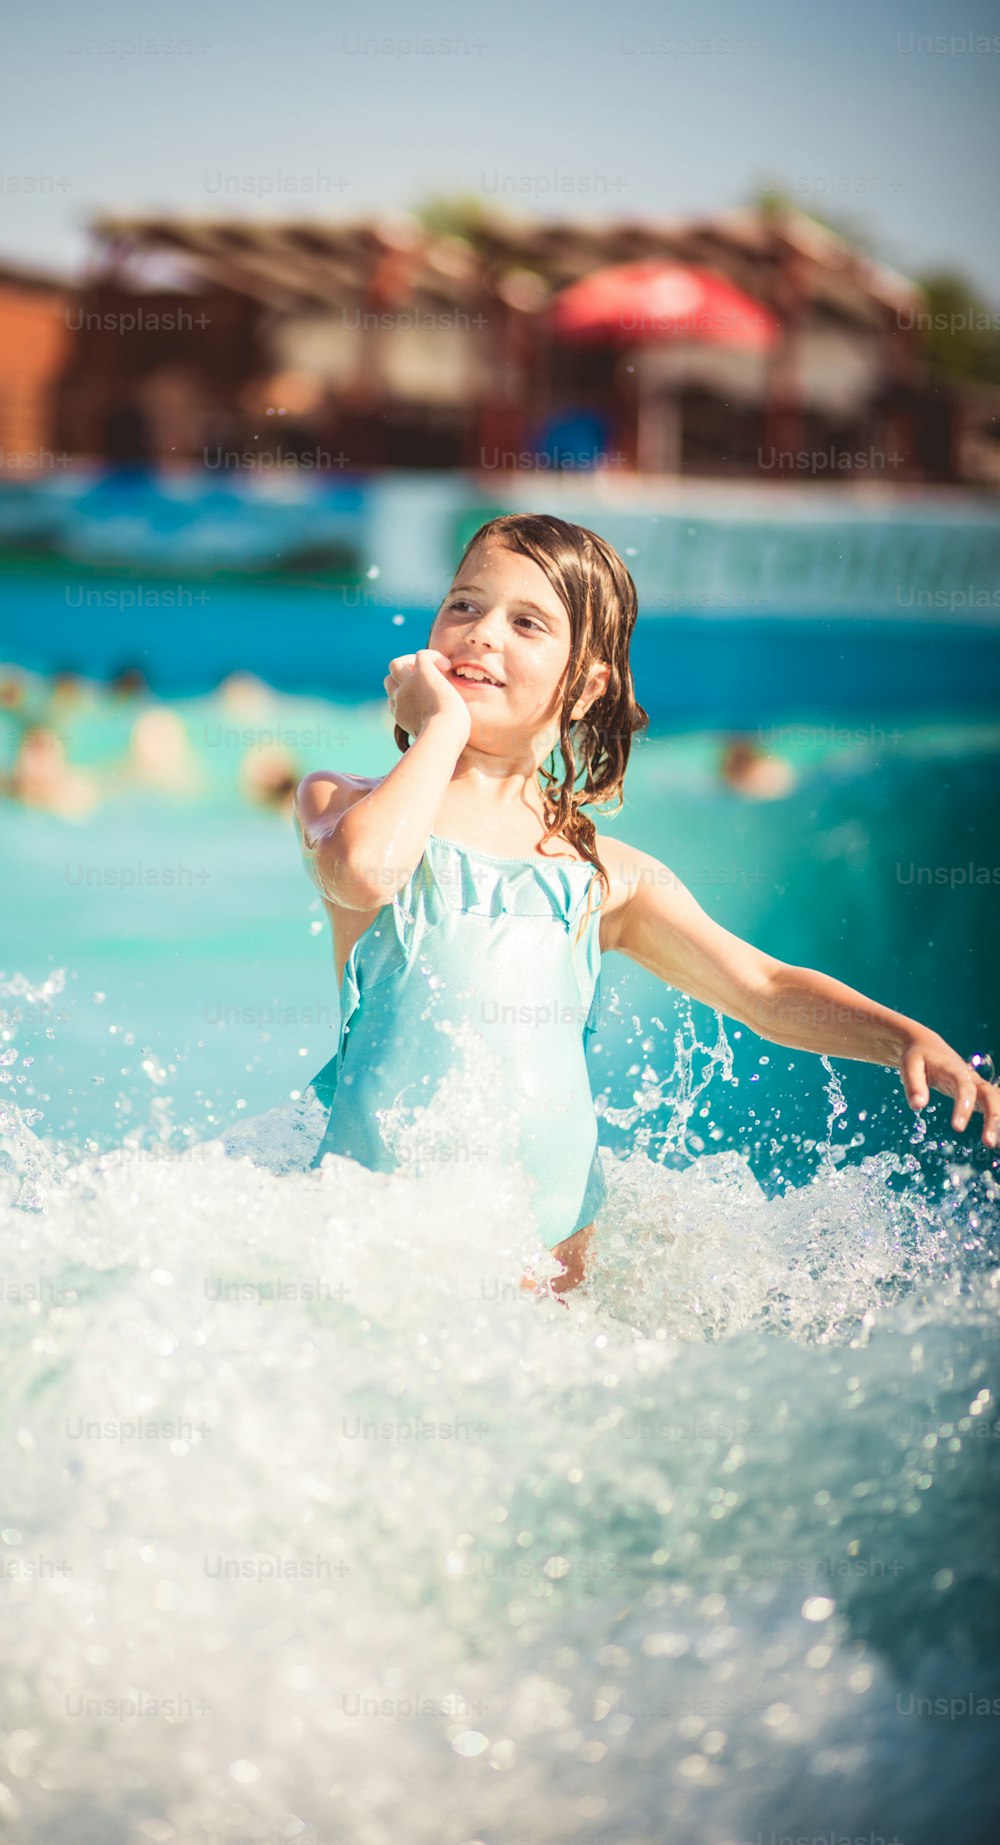 파도는 너무 재미 있습니다. 수영장에서 즐거운 시간을 보내는 아이.